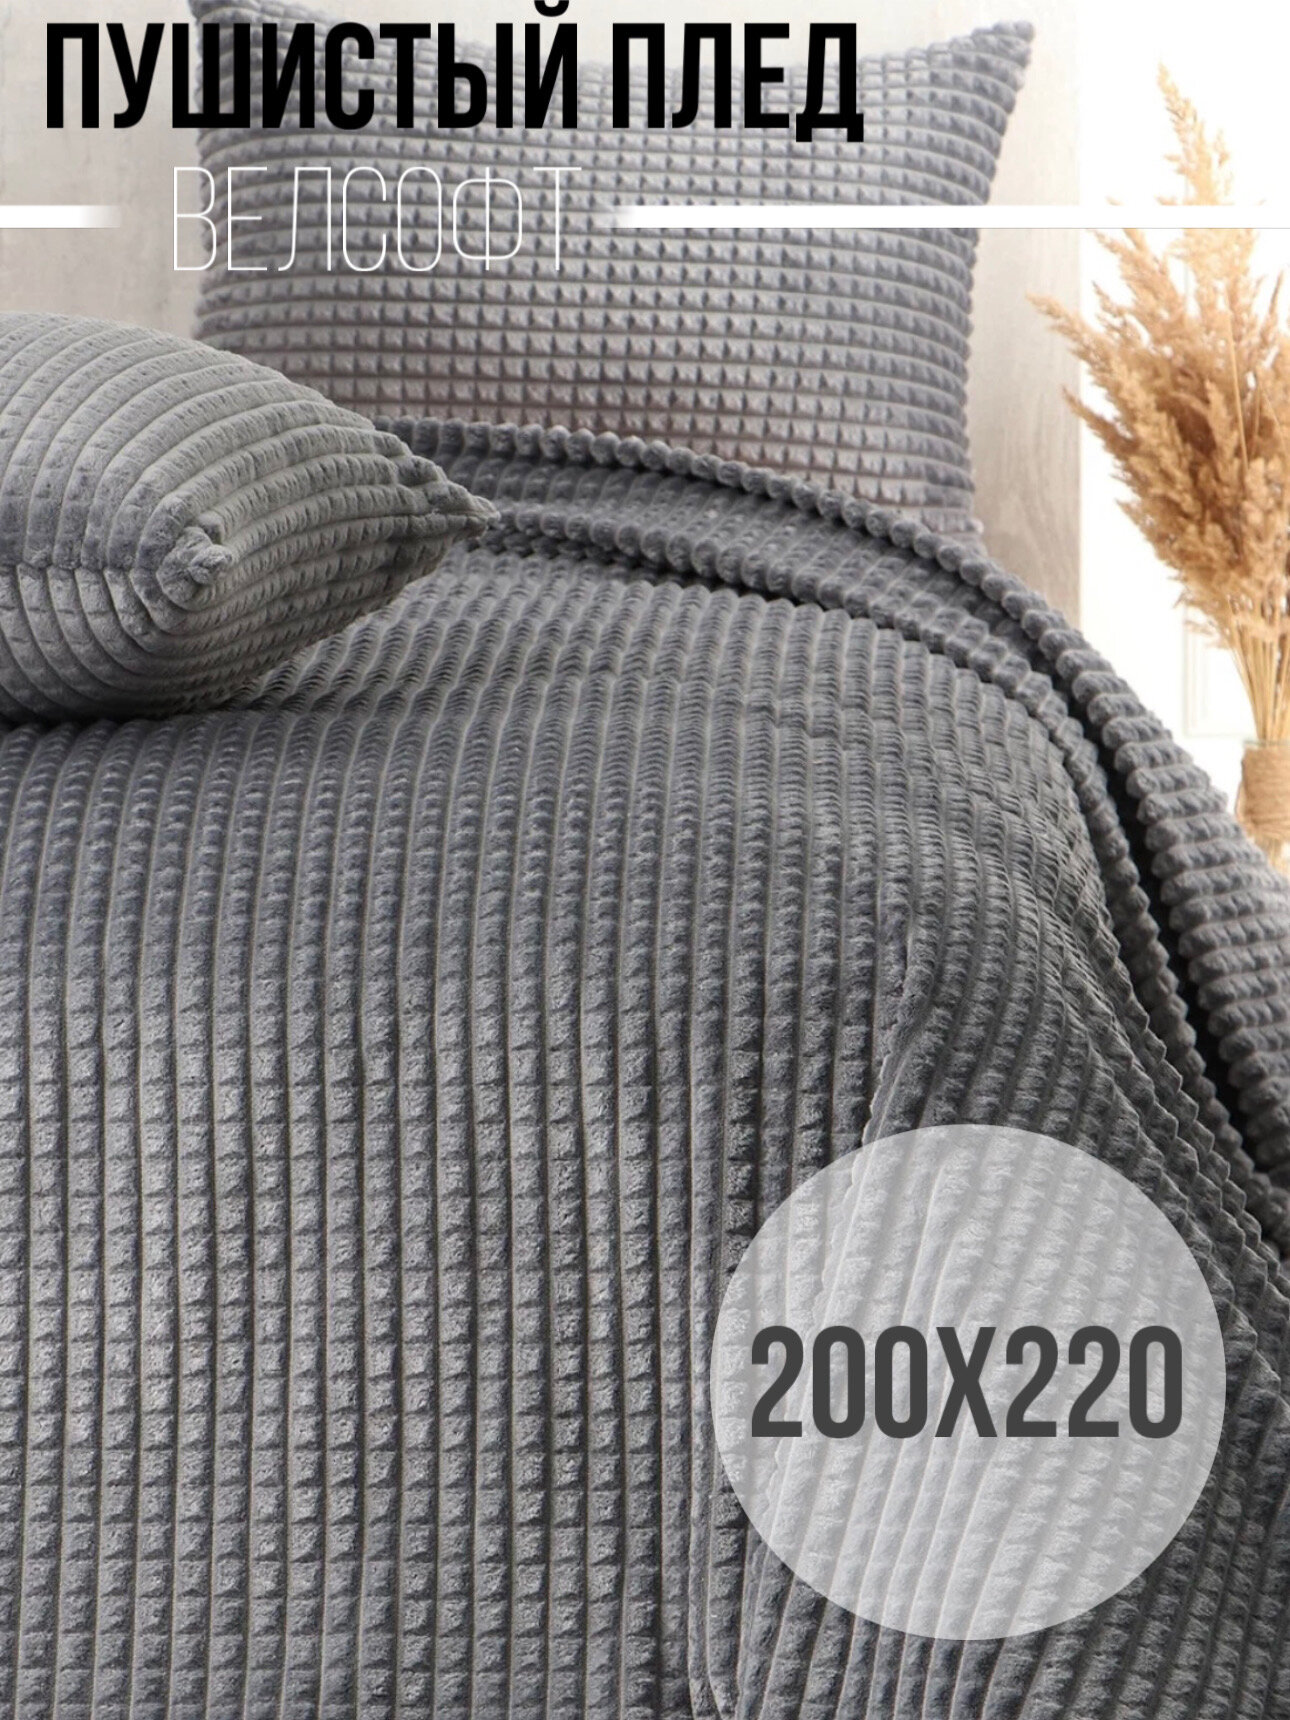 Пушистый Плед покрывало Велсофт Евро 200х220, накидка на кровать, серый - фотография № 1